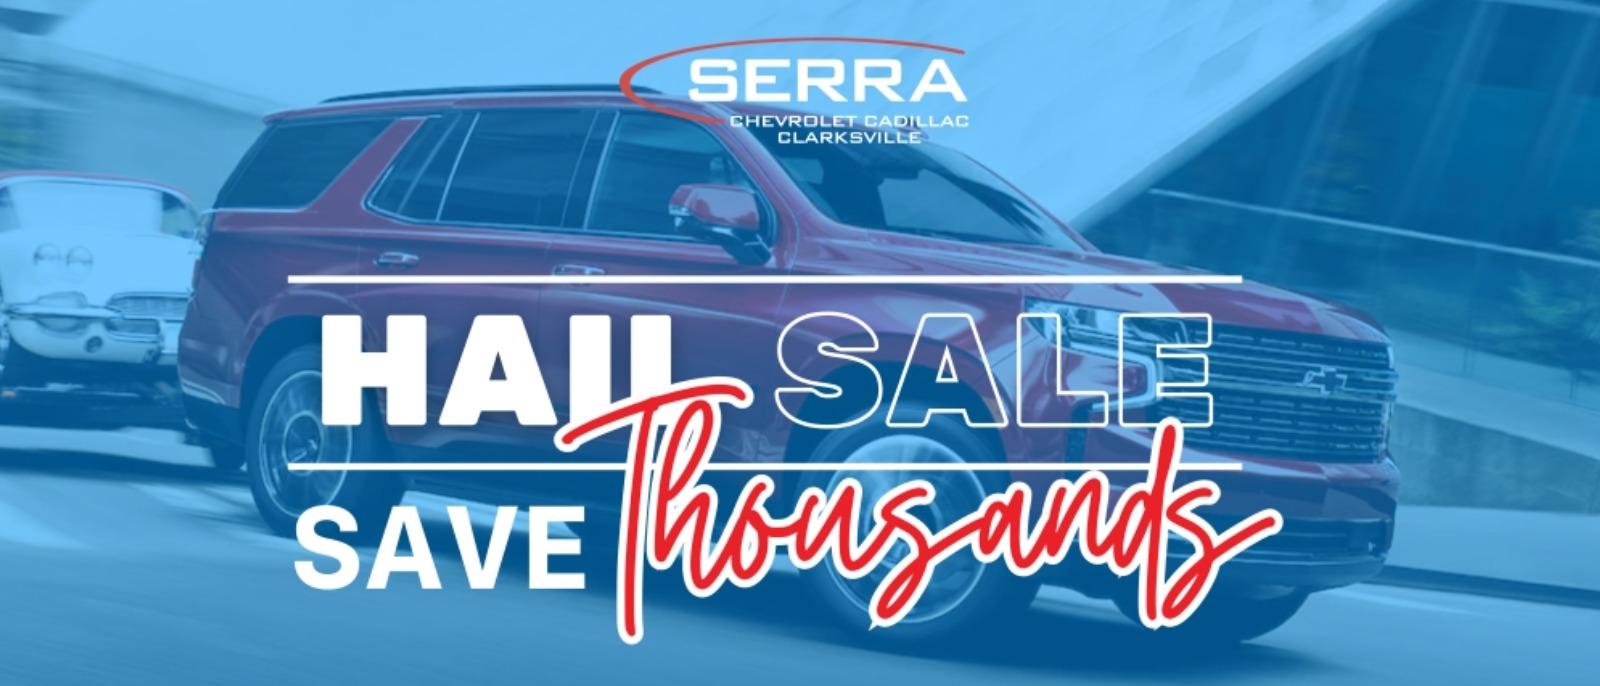 Hail Sale at Serra Chevrolet Clarksville